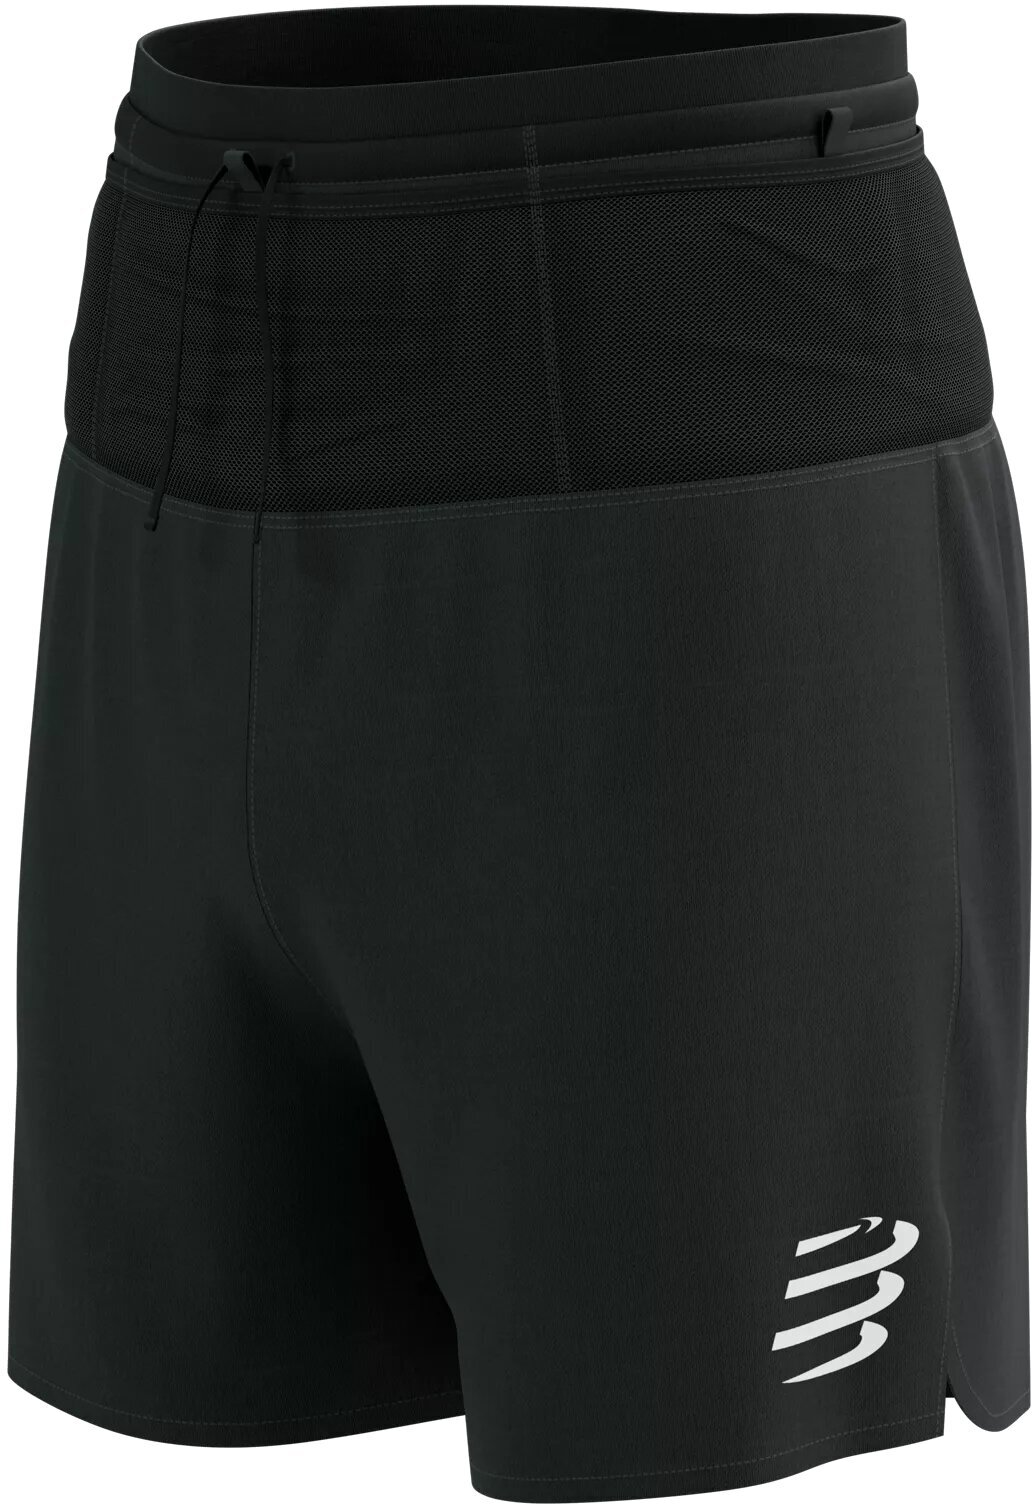 Running shorts Compressport Trail Racing 2-In-1 Short M Black XL Running shorts